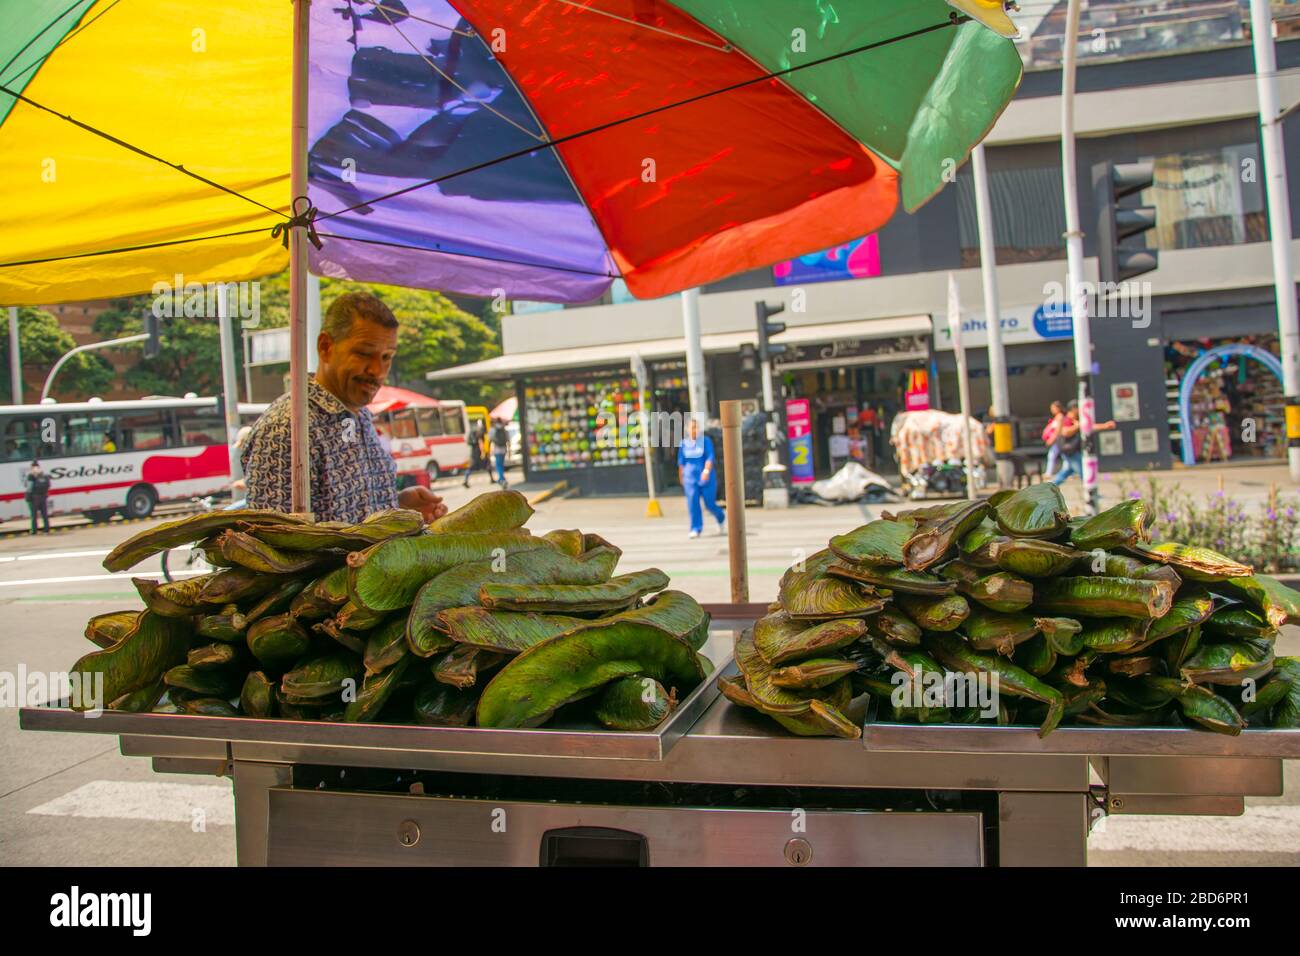 Medellin, Colombie - 18 mars 2020: Les travailleurs informels vendant de la nourriture dans la rue pendant la quarantaine Banque D'Images